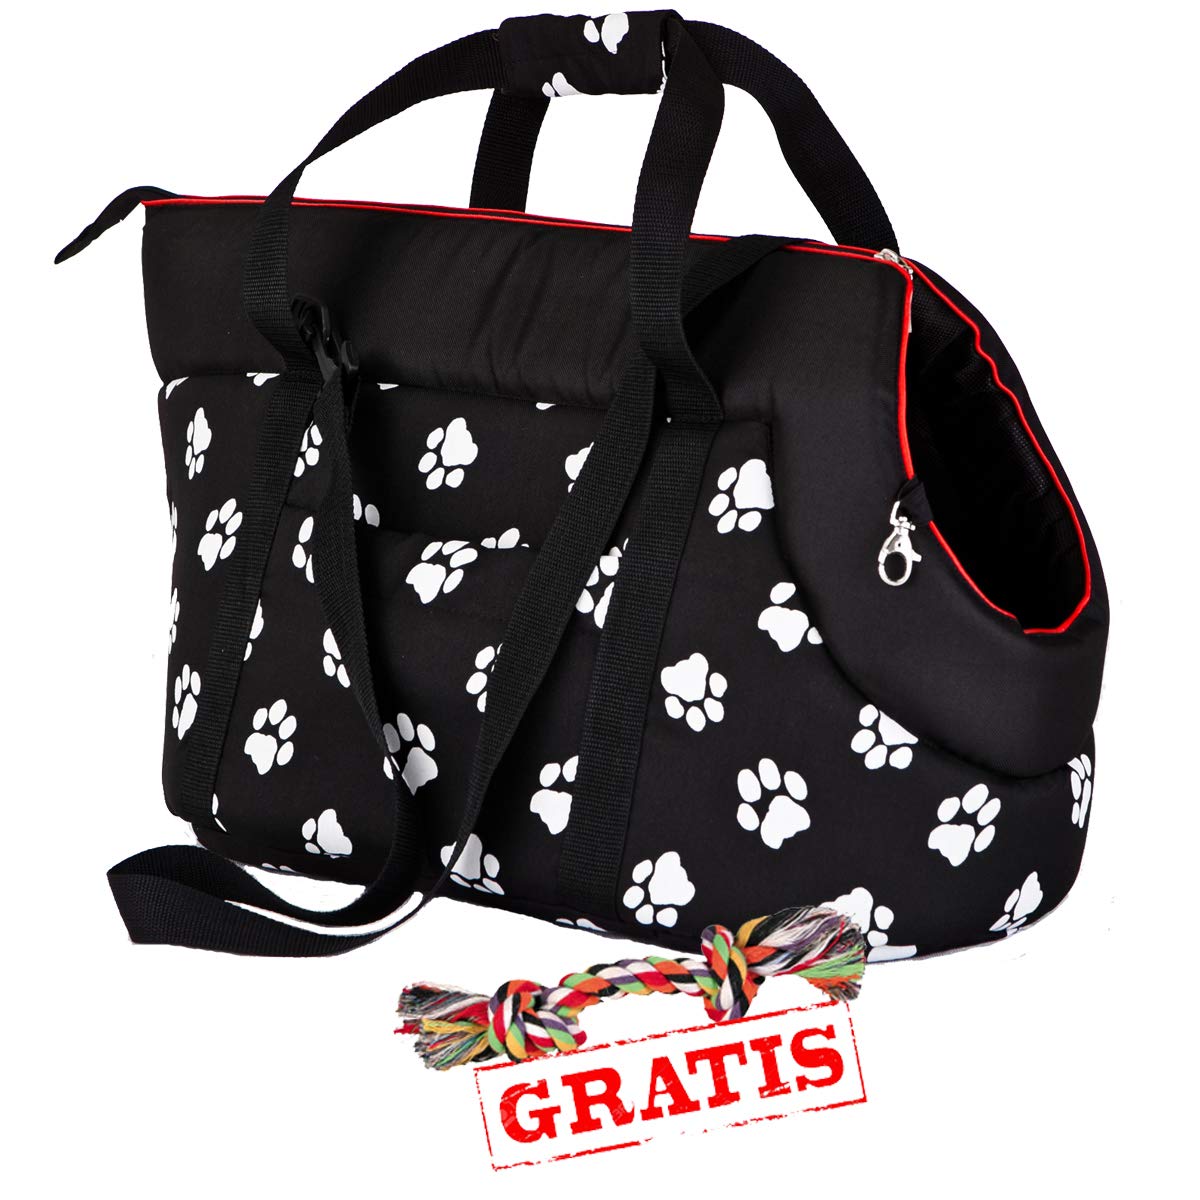 Hobbydog TORCWL3 + Spieltau gratis Transport Bag Transporttasche für Hunde und Katzen Hundetasche Katzentasche Transporttasche Tragetasche Transportbox (3 Verschiedene Größen) (R3 (30 x 50 cm))